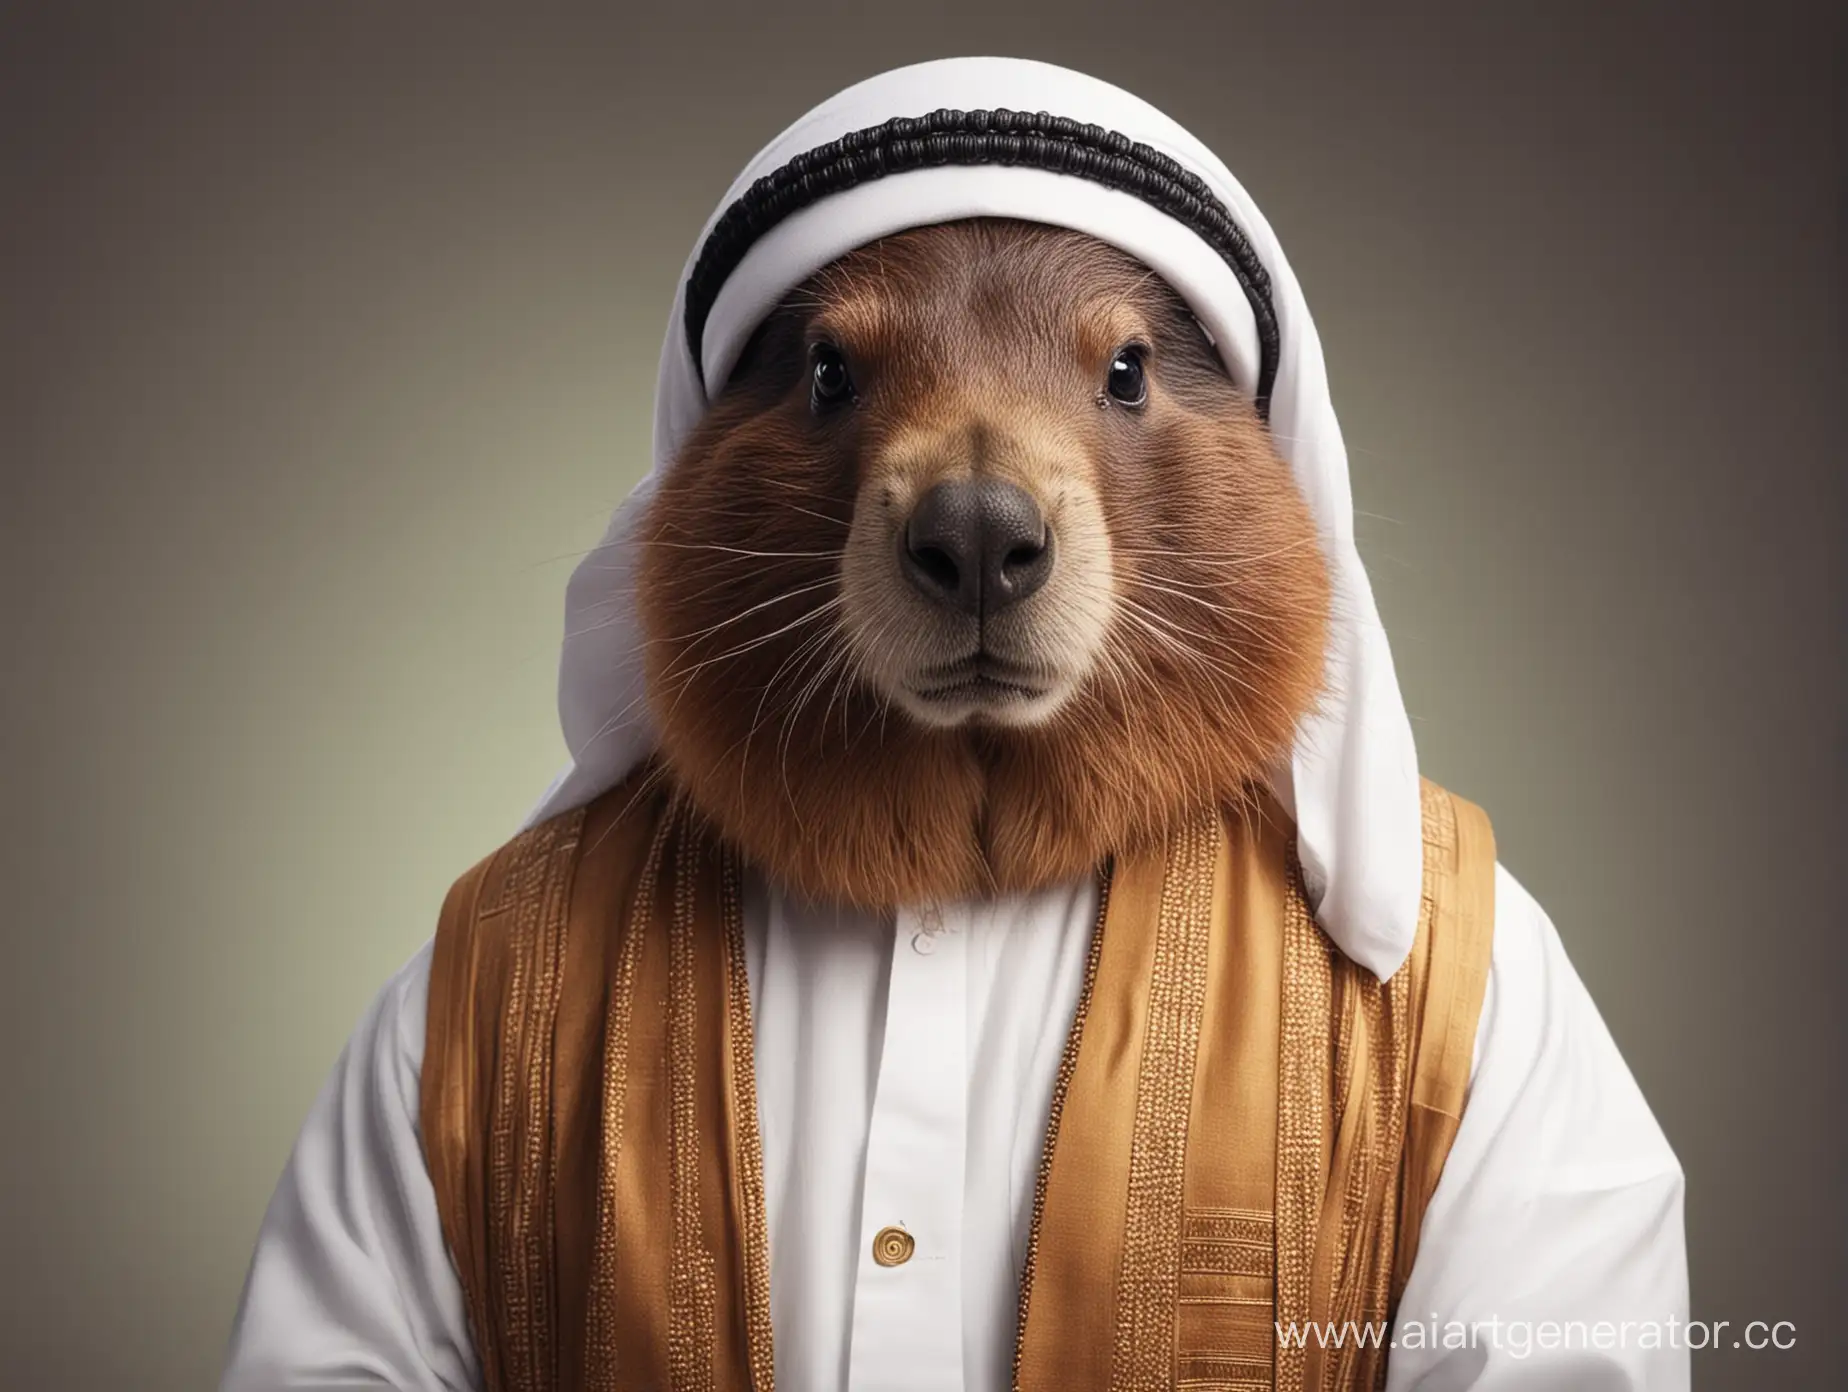 Sheikh Beaver